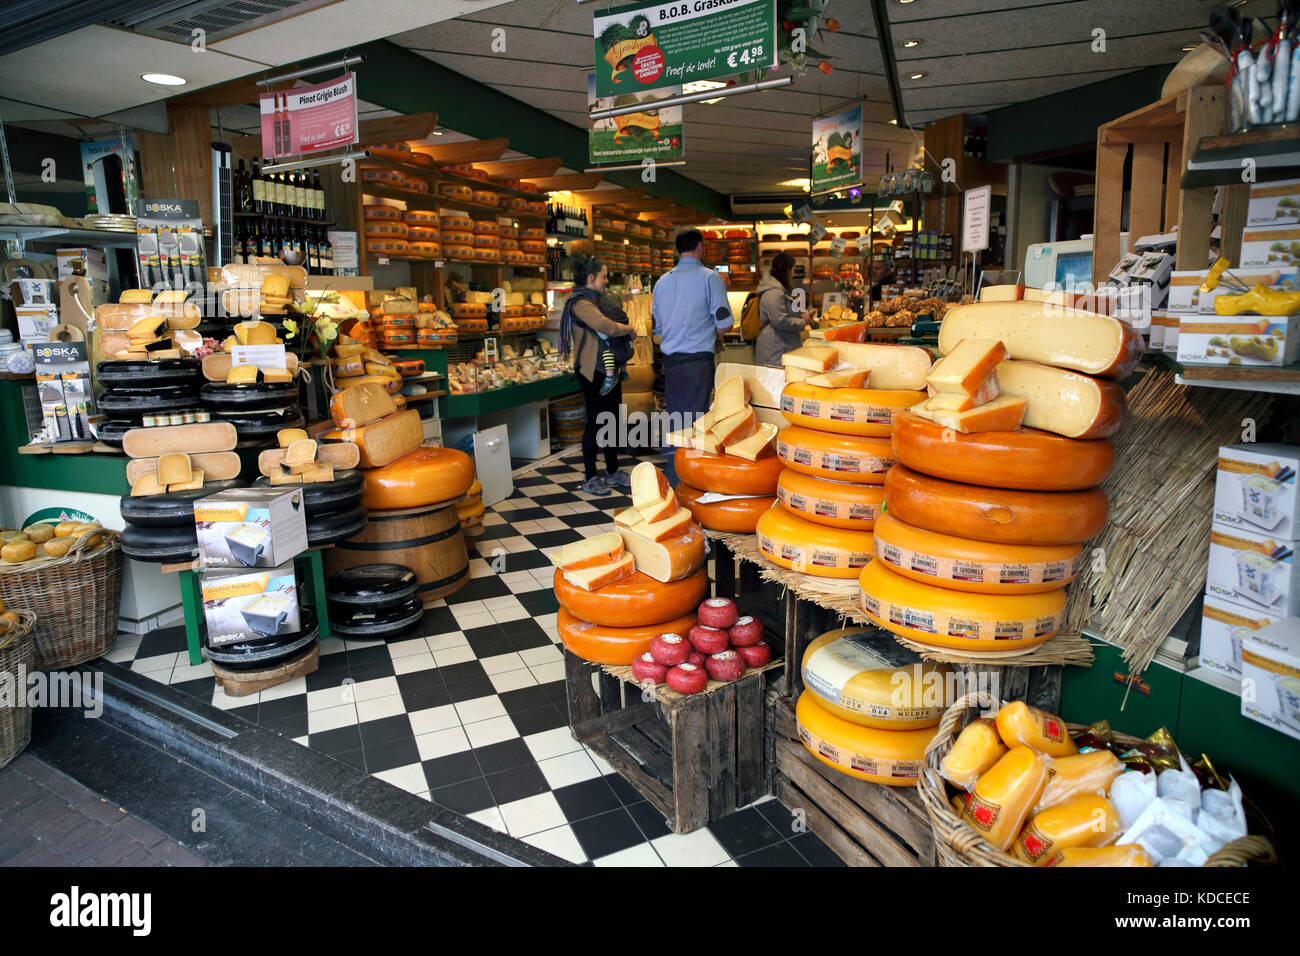 Roues de fromage sur l'affichage à l'extérieur de l'Kaashuis fromagerie Tromp, Haarlem, Pays-Bas Banque D'Images